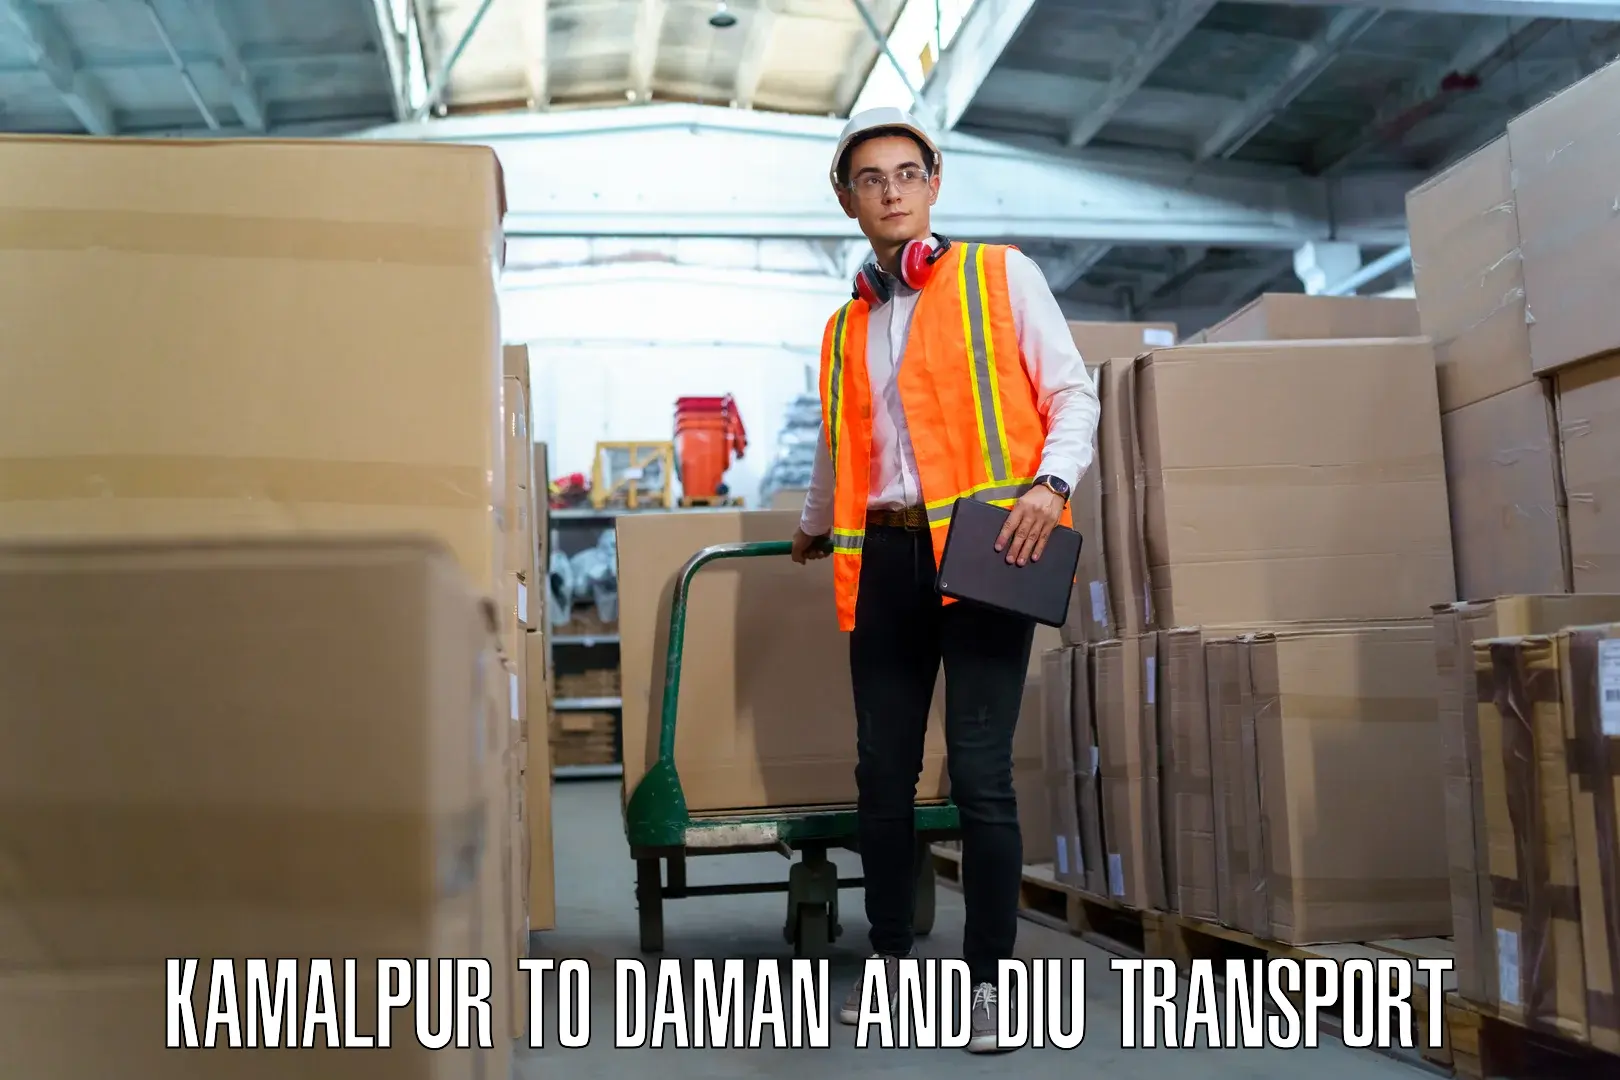 Container transport service Kamalpur to Daman and Diu